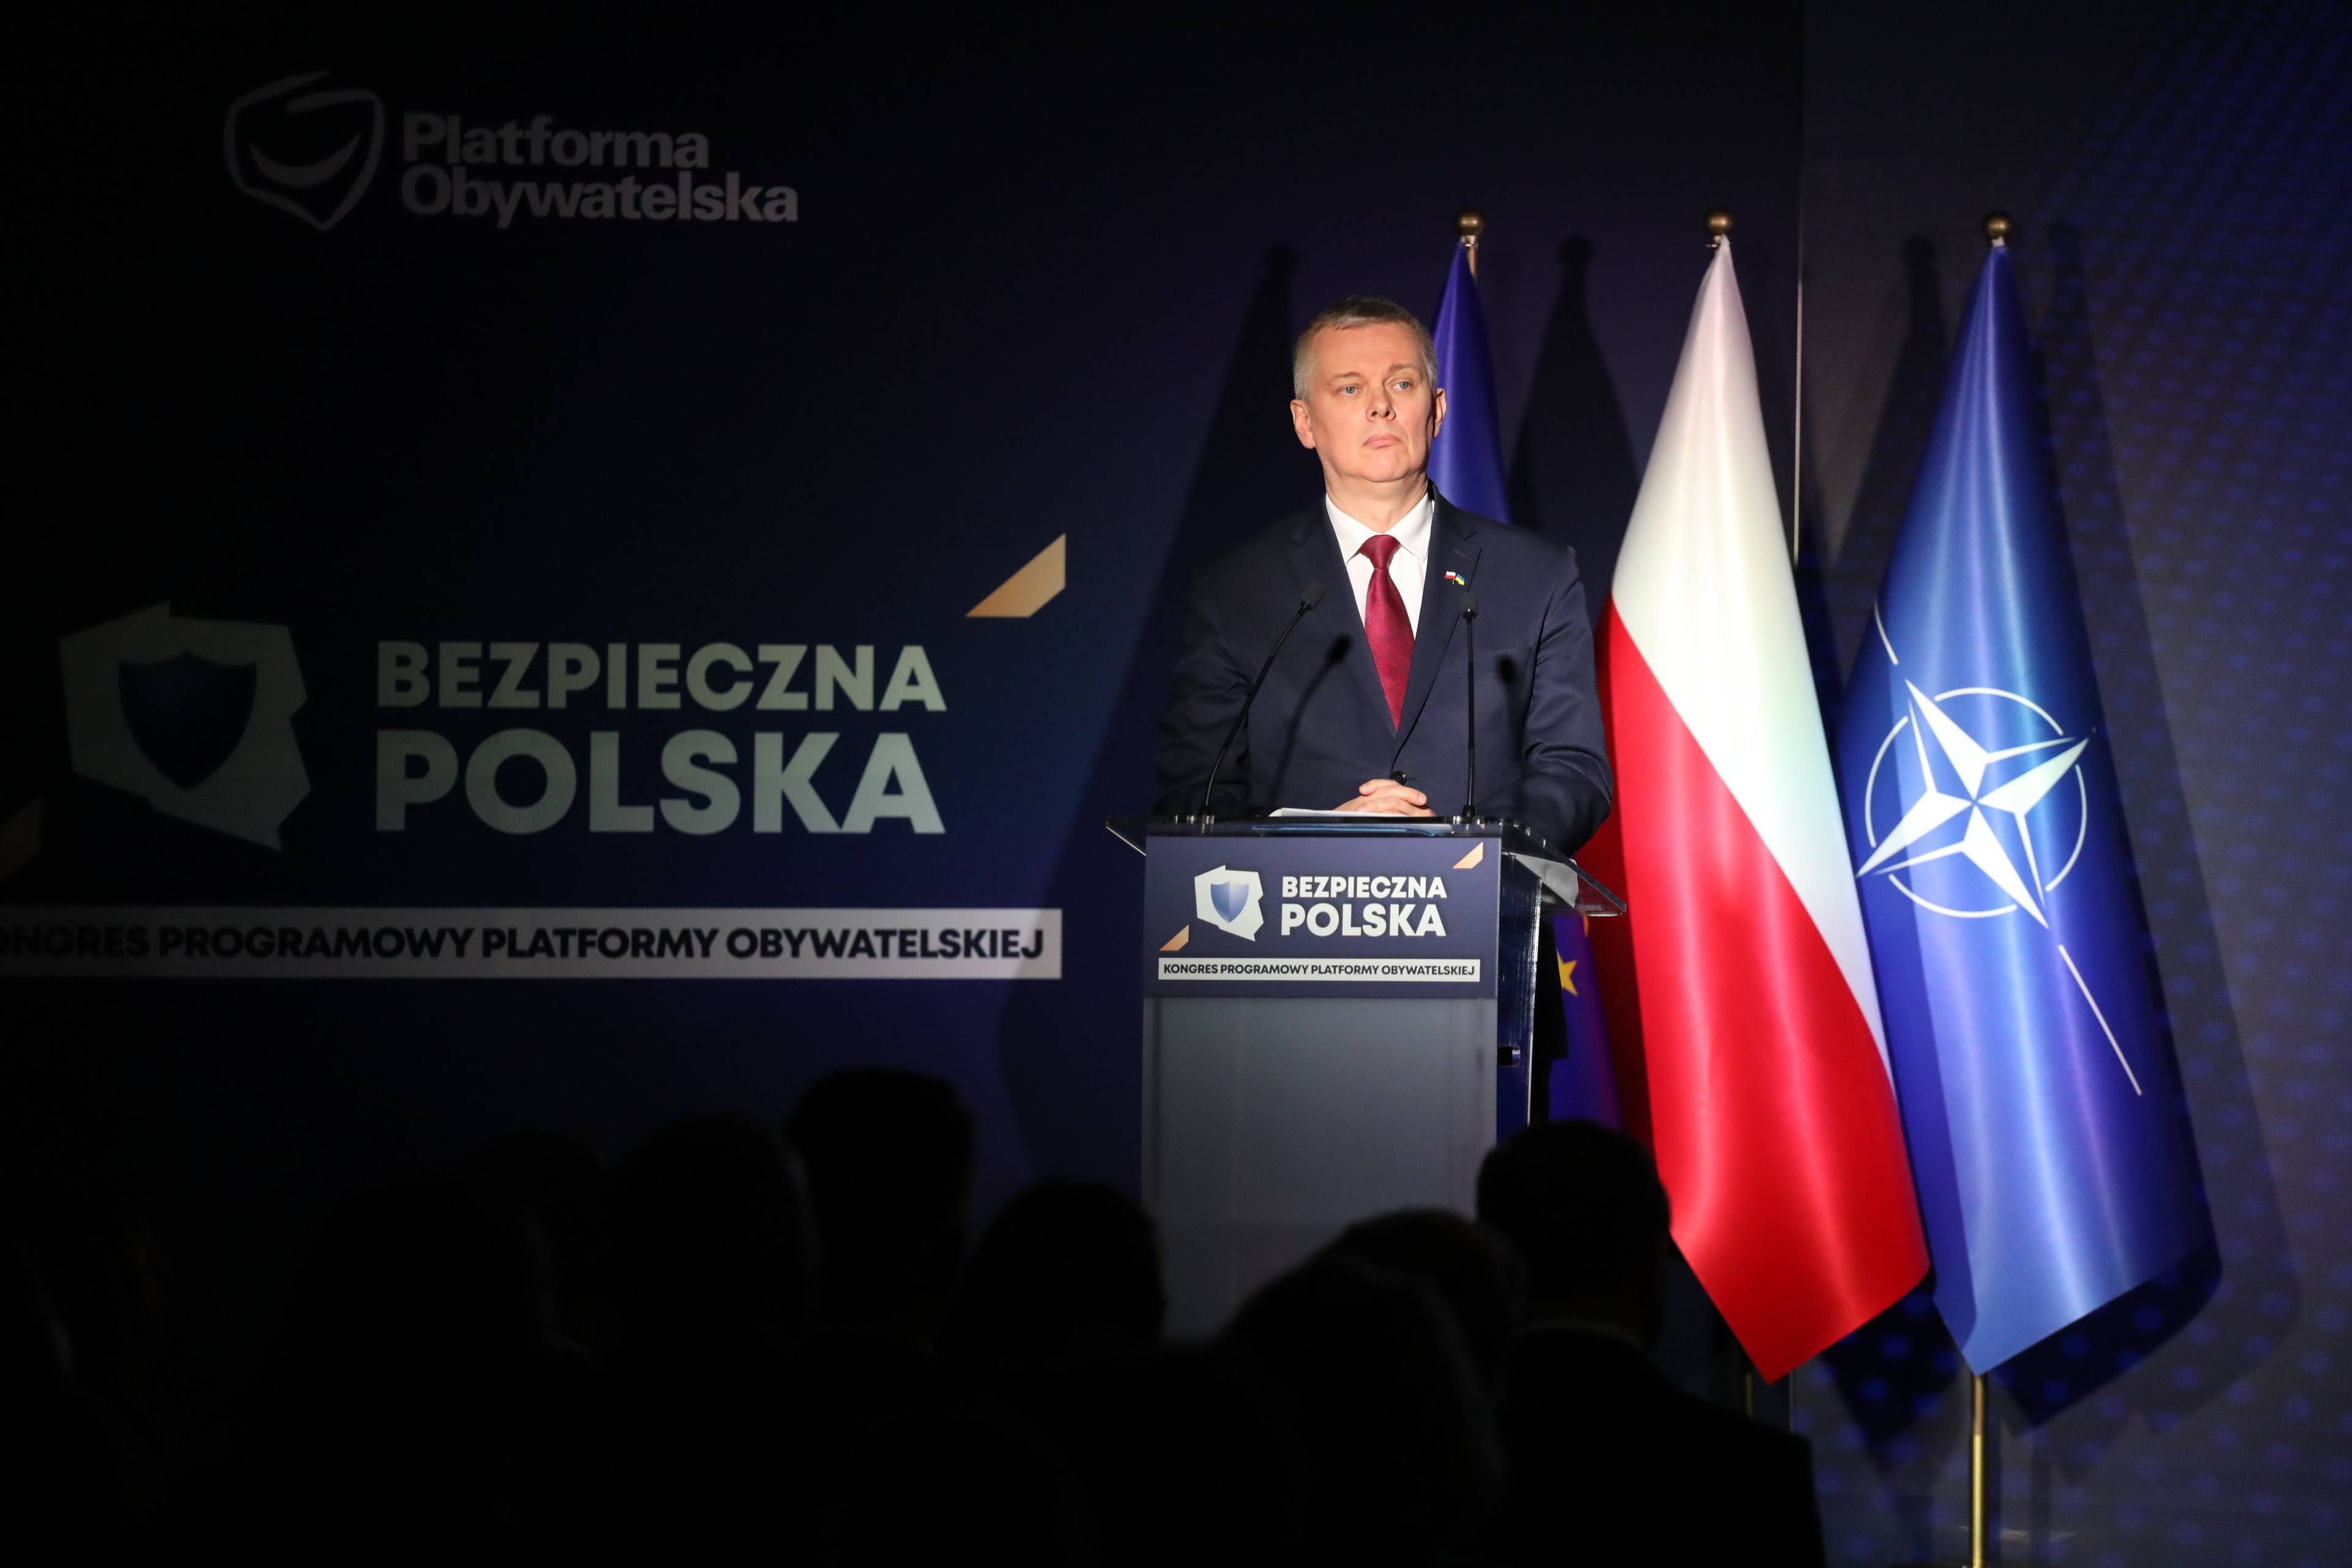 Kongres Programowy Platformy Obywatelskiej RP  Bezpieczna Polska 